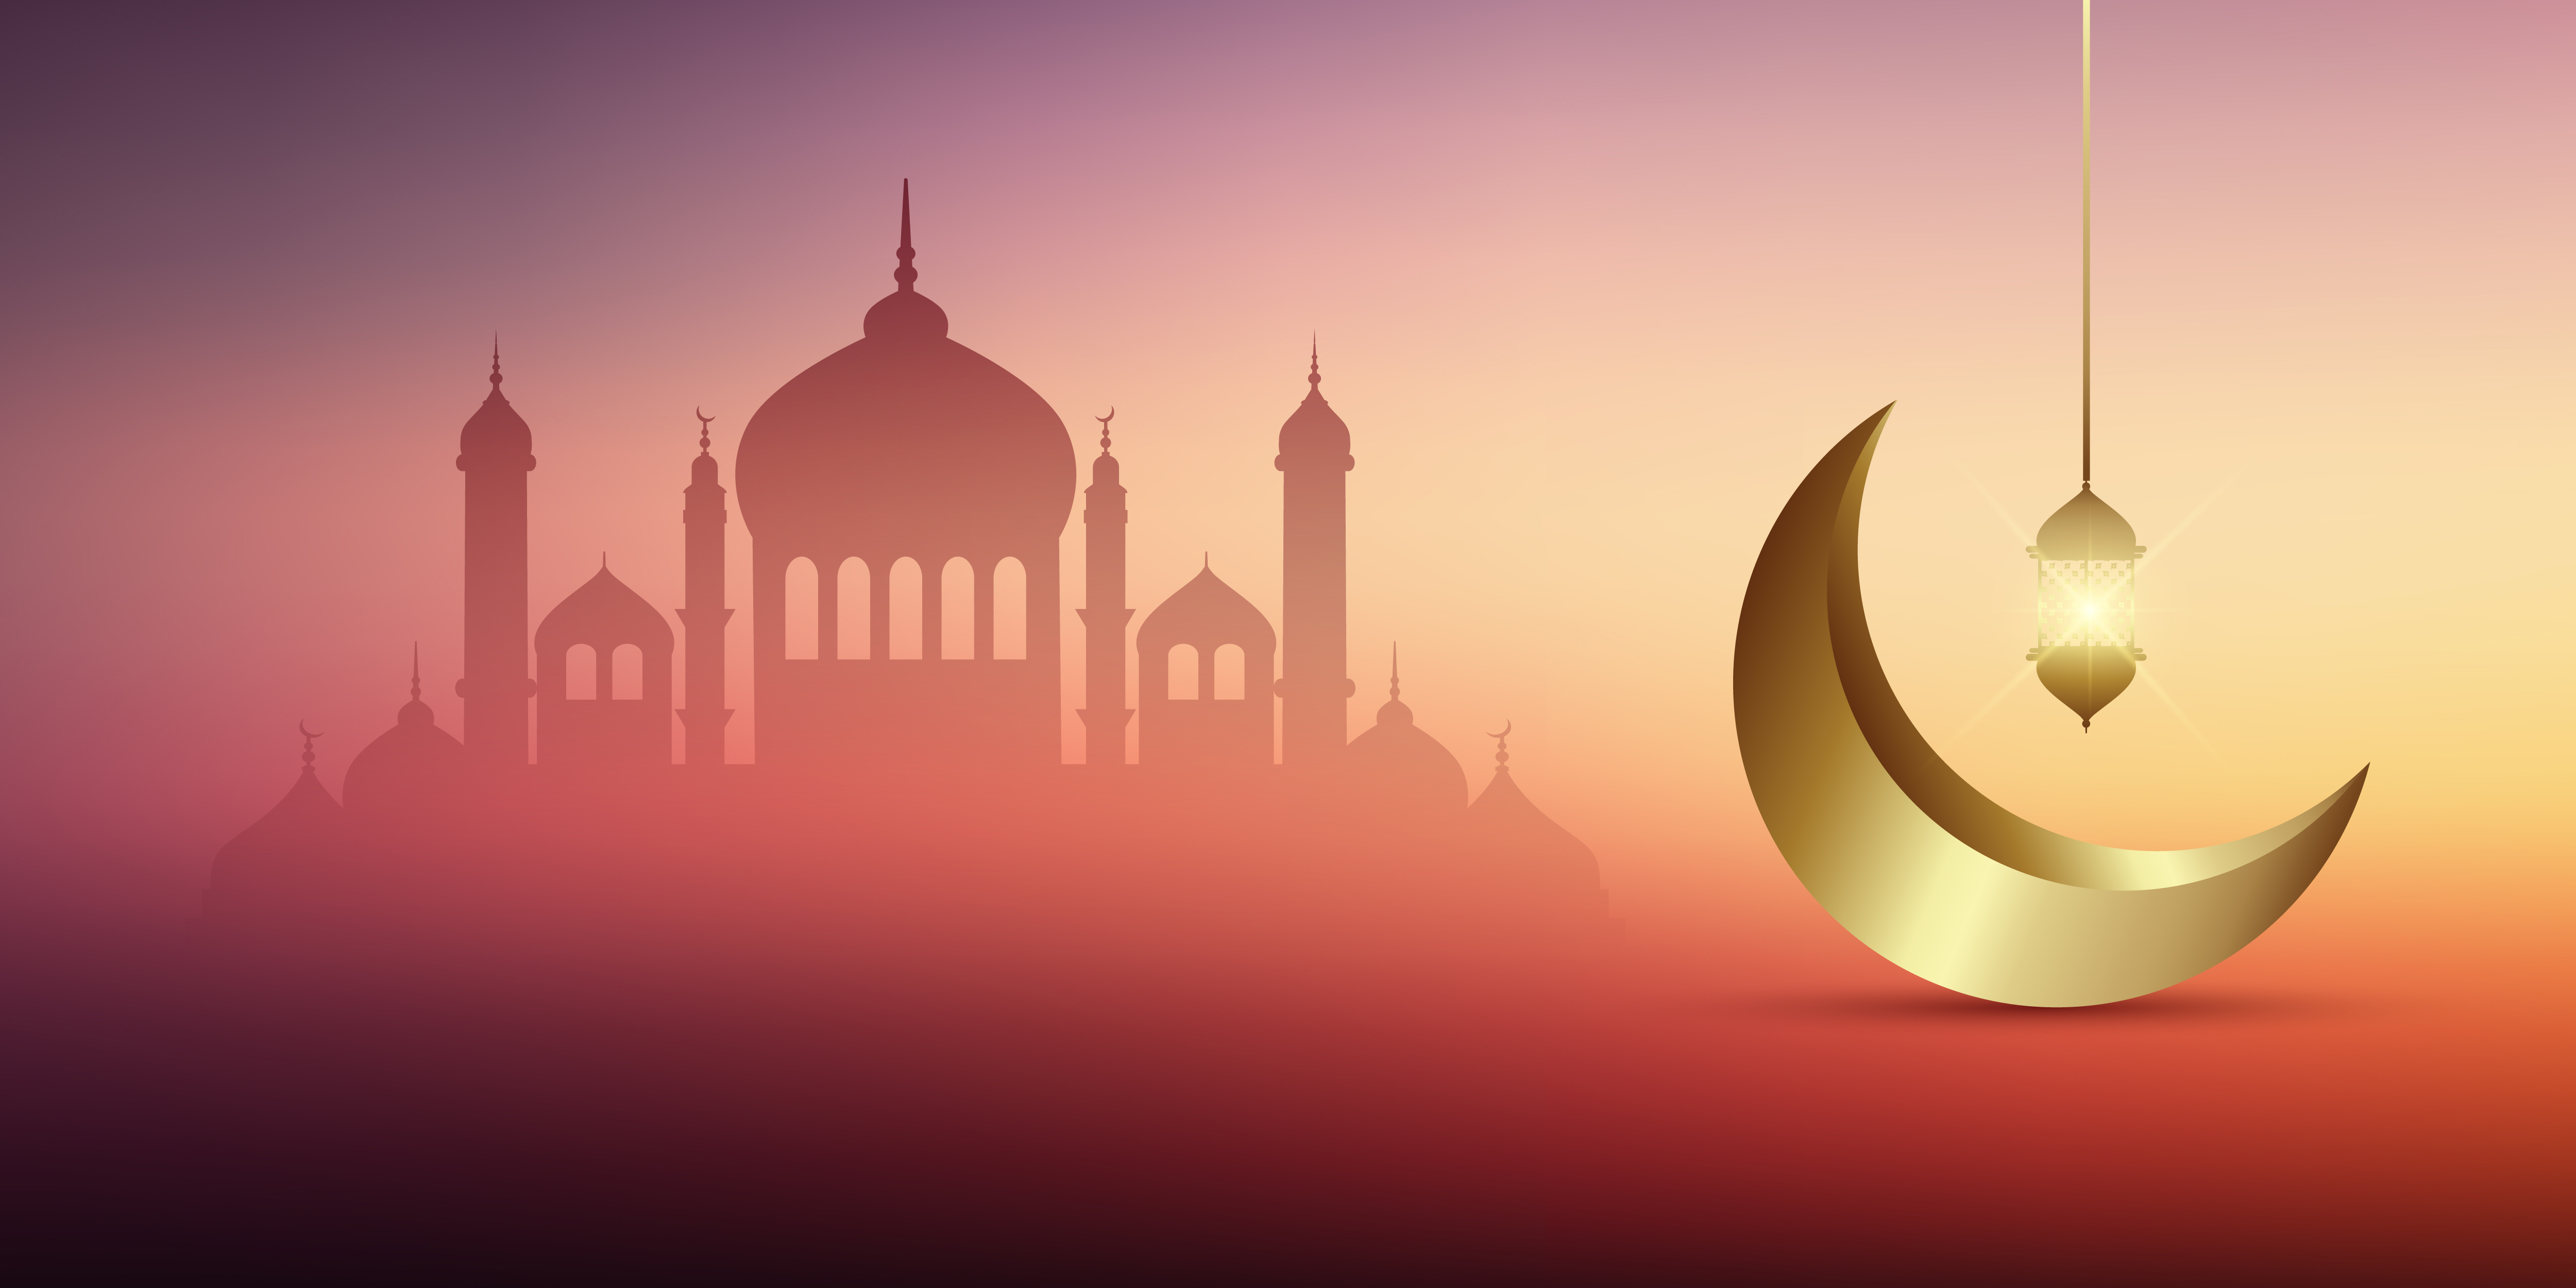  Ramadan kareem banner  Download Free Vectors Clipart 